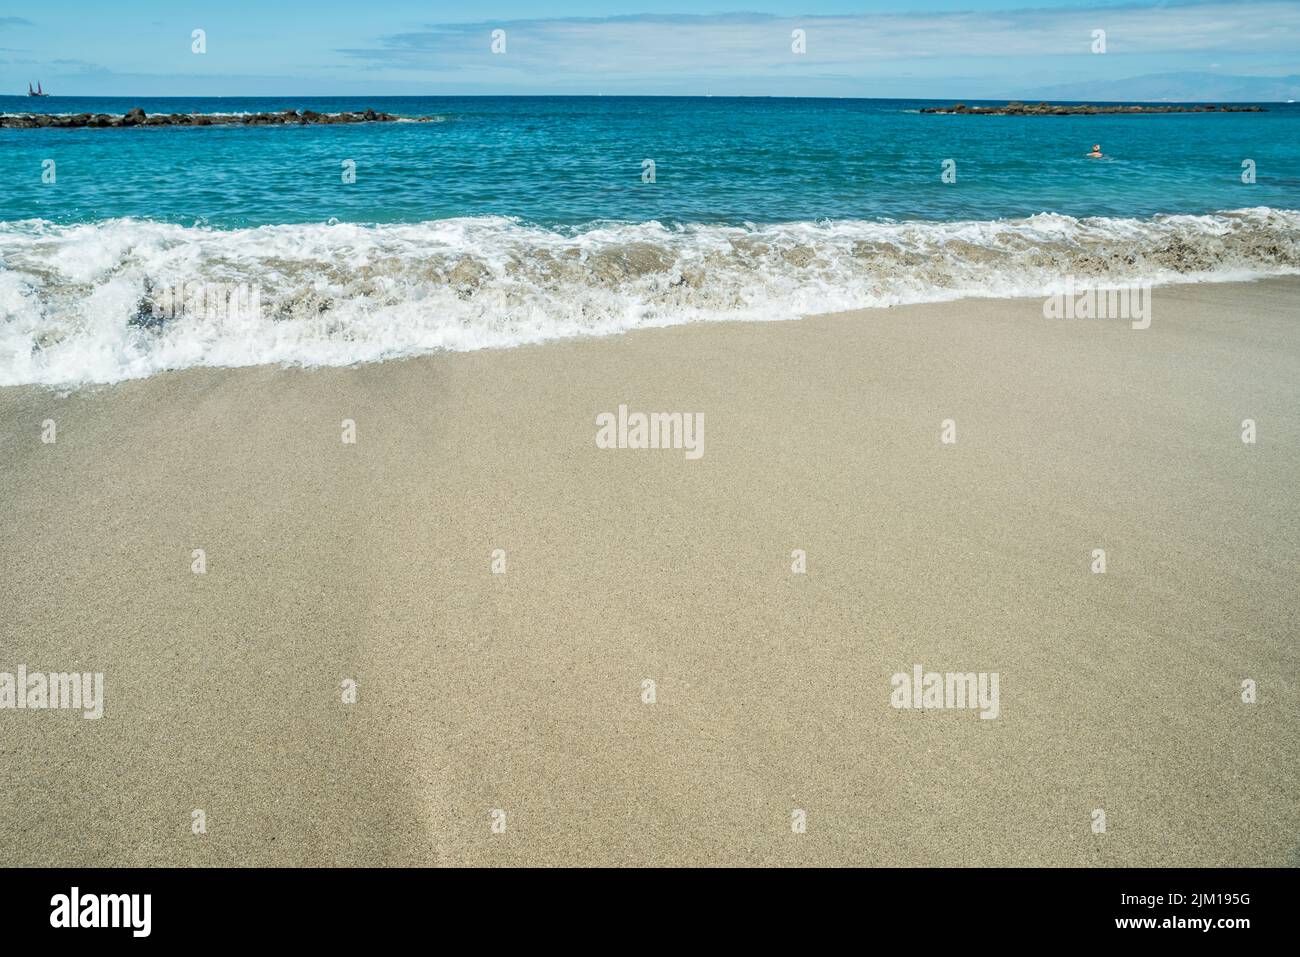 Ocean foam covering beautiful long sandy beach. Stock Photo